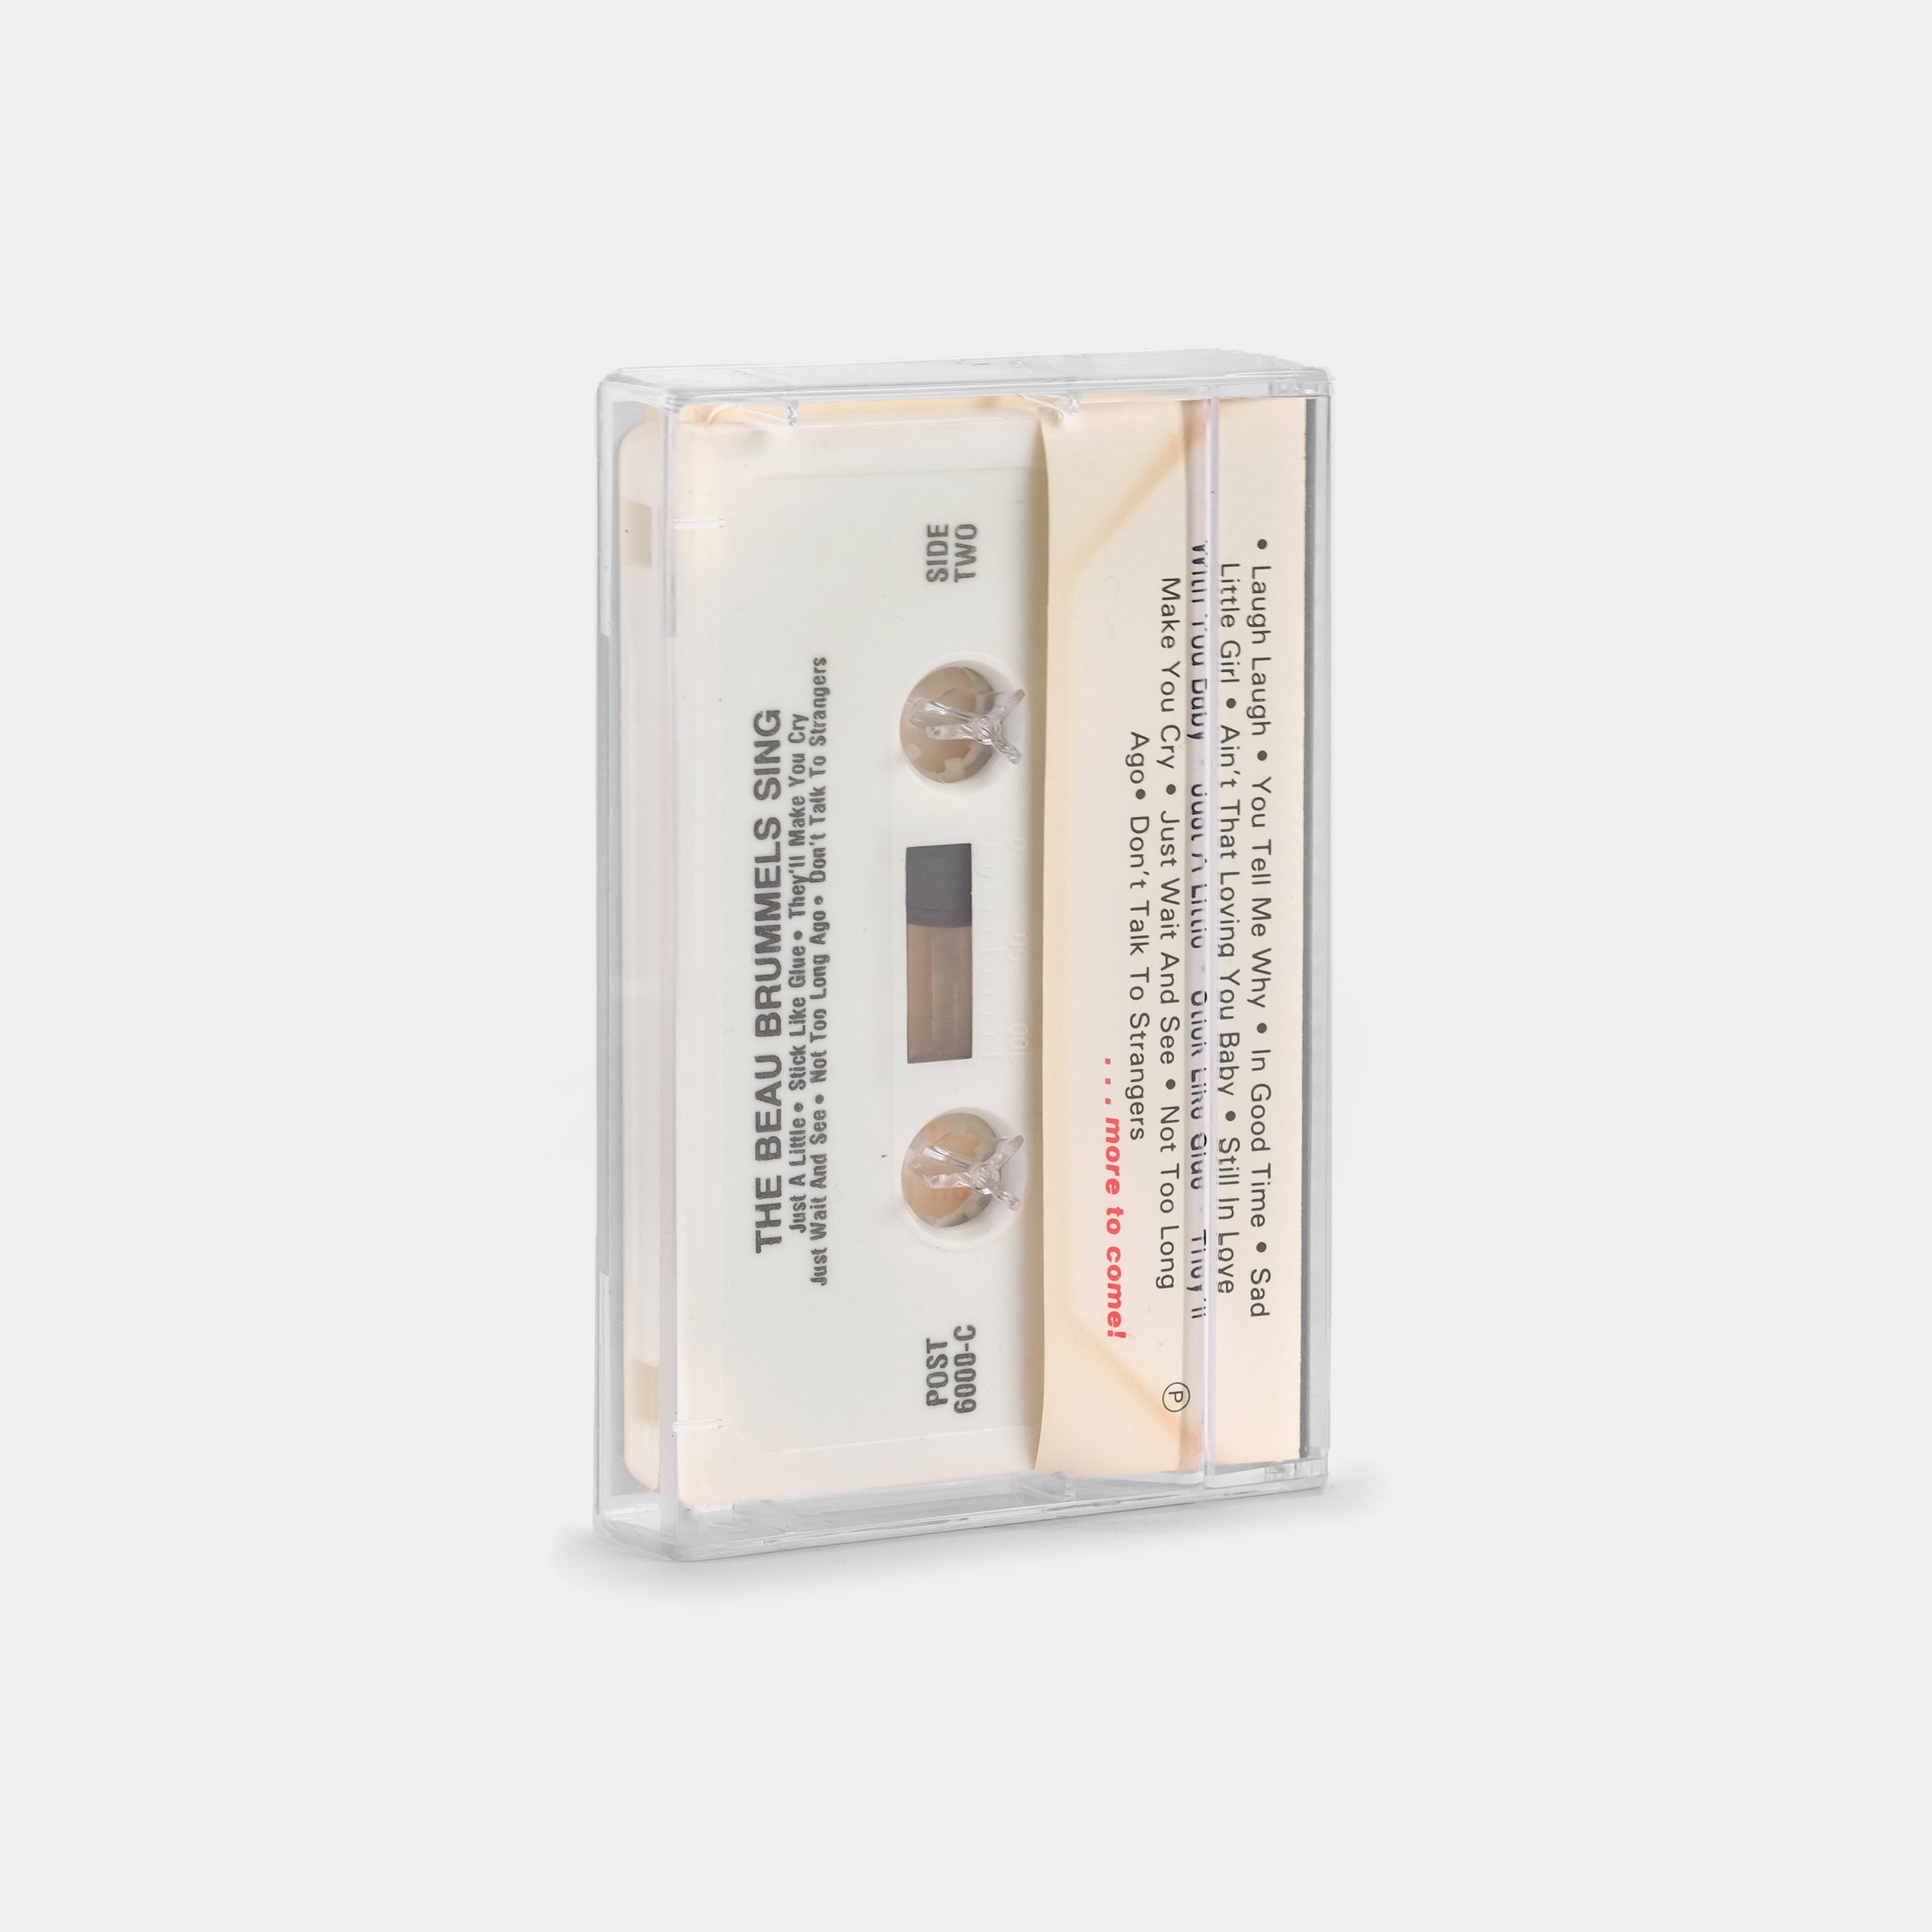 The Beau Brummesls - Golden Sounds Of The Beau Brummels Cassette Tape